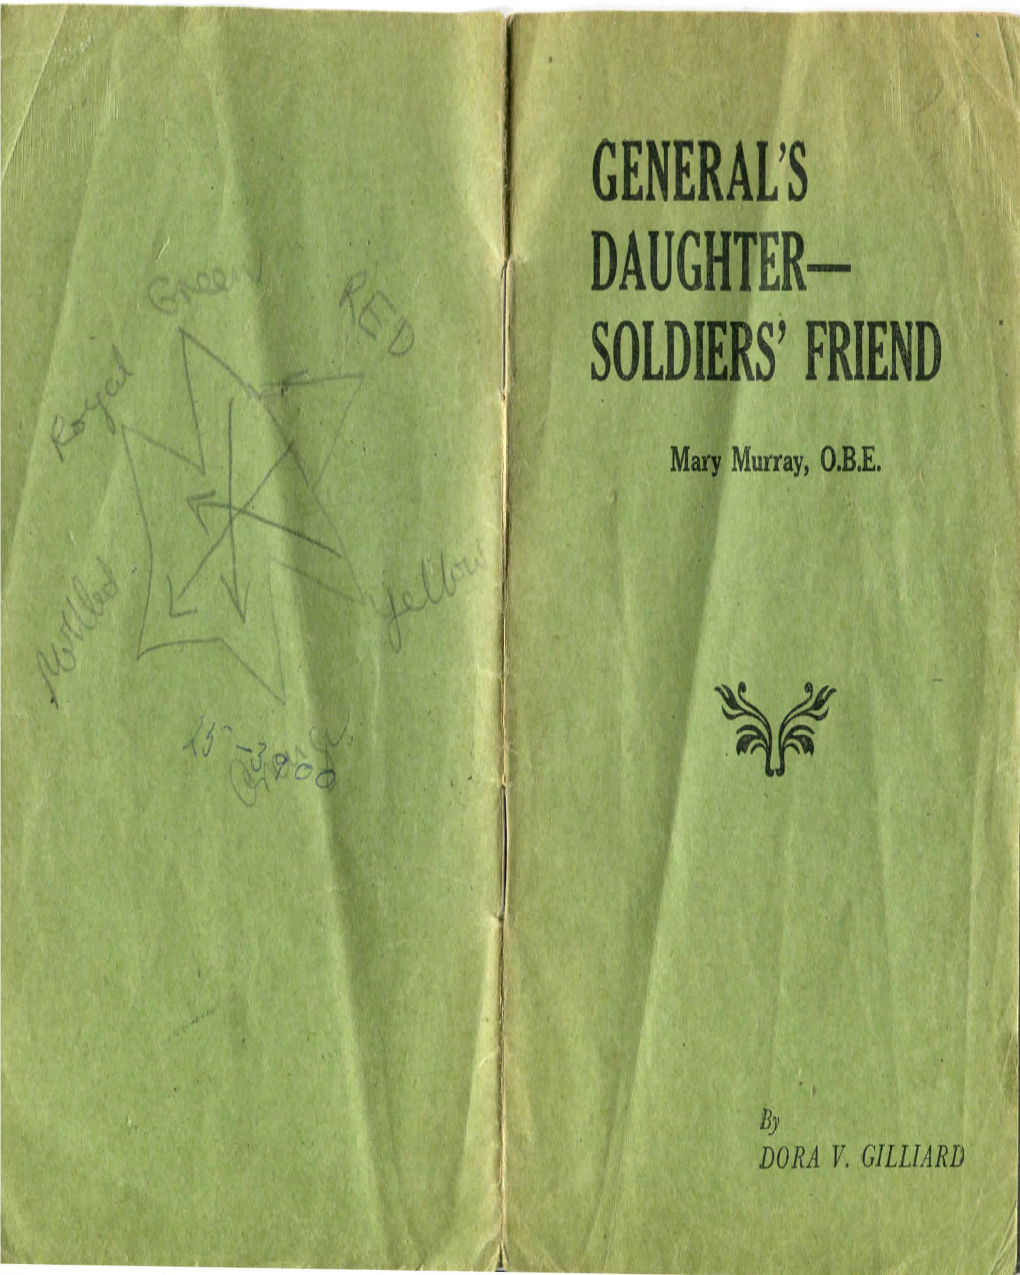 Soldiers' Friend